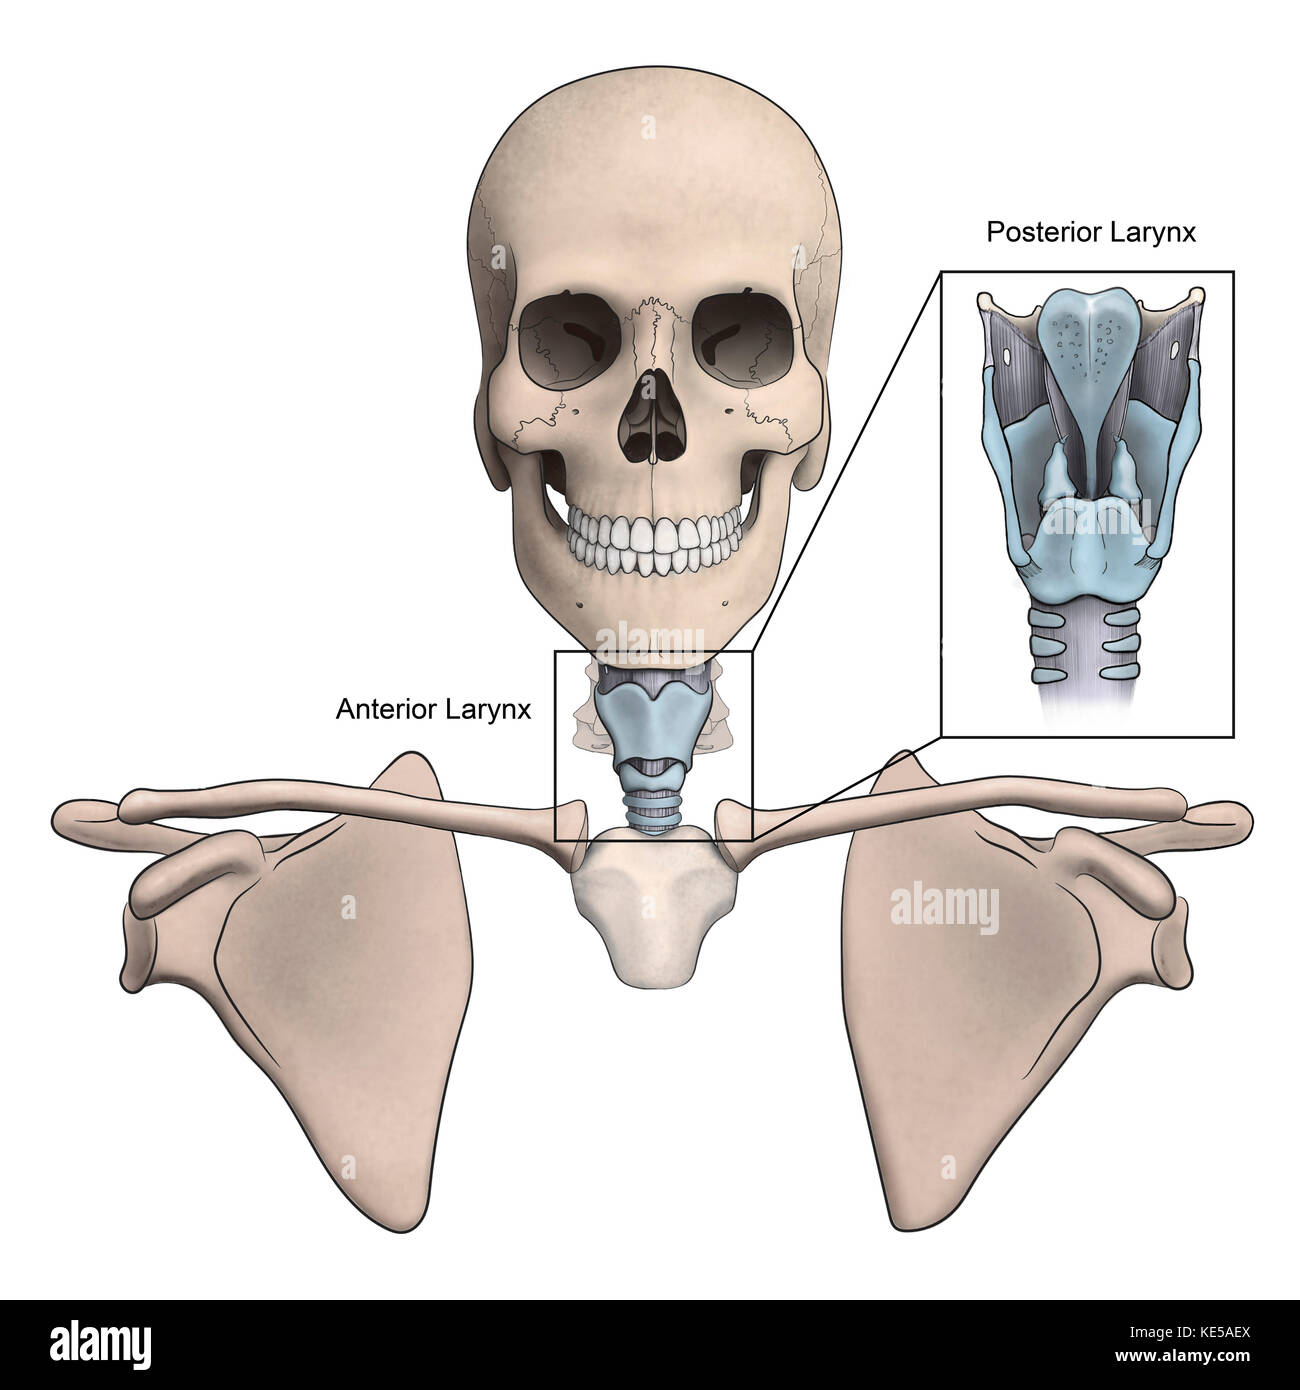 Partie antérieure et postérieure du larynx et de l'anatomie du squelette. Banque D'Images